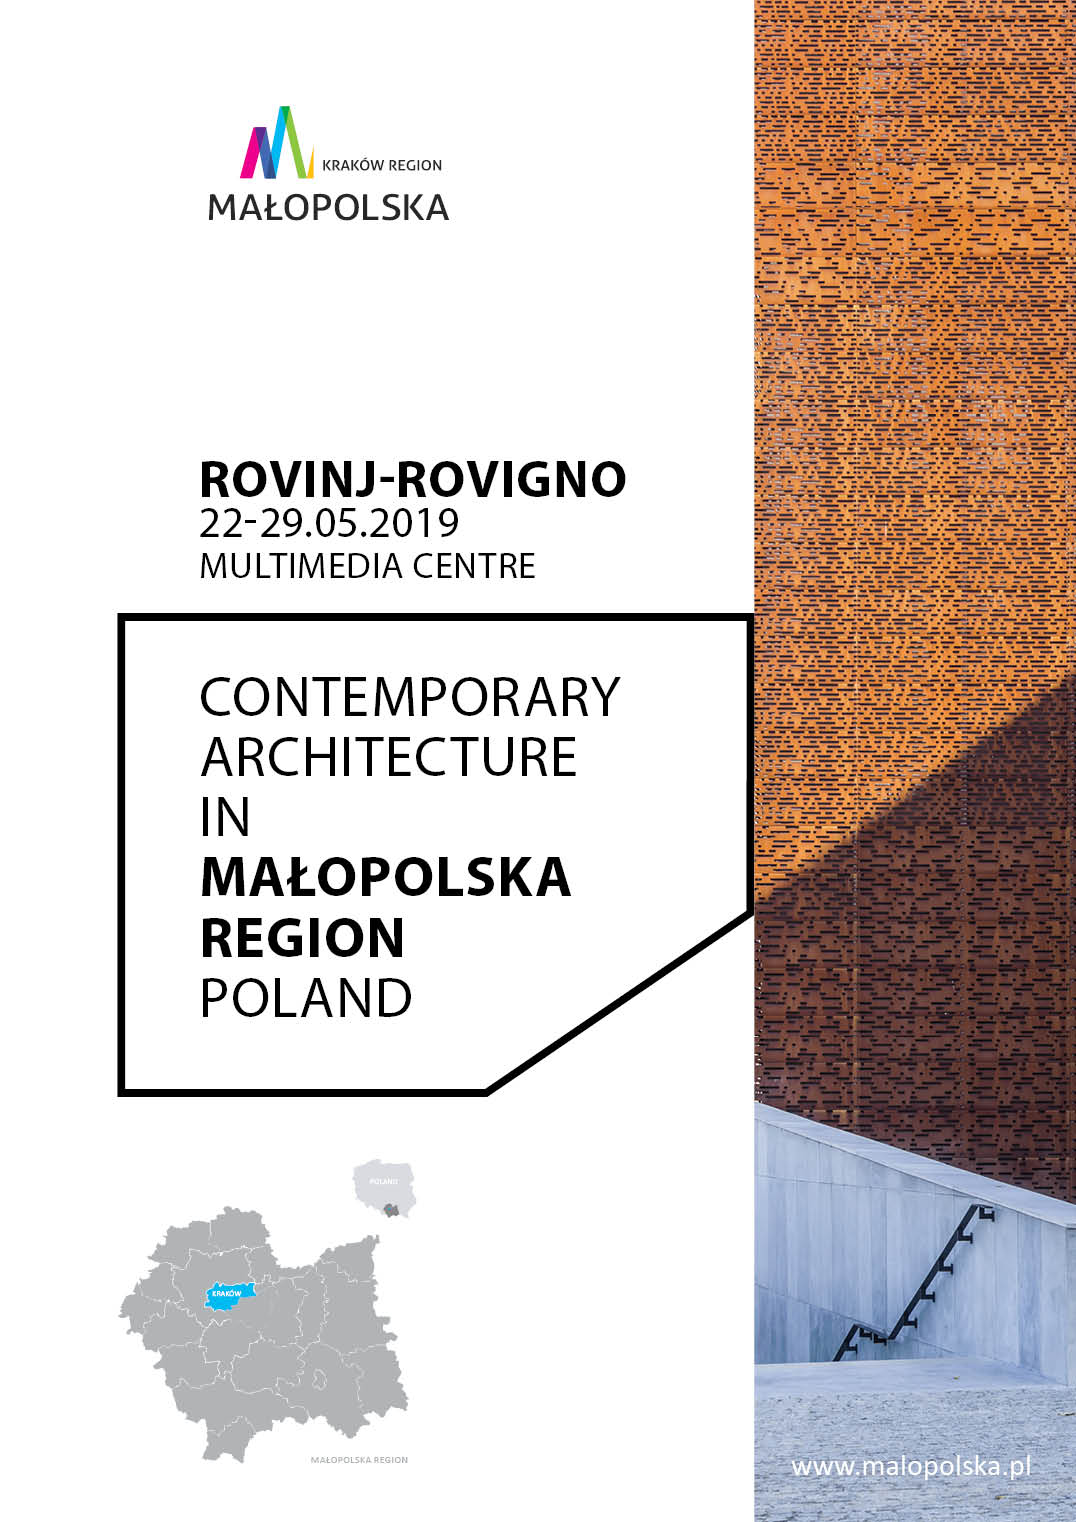 Plakat zapaszający na wystawę. Na plakacie fragment budynku, logo Małopolski oraz napis Rovinj-Rovigno 22-29.05.2019 oraz tytuł wystawy 